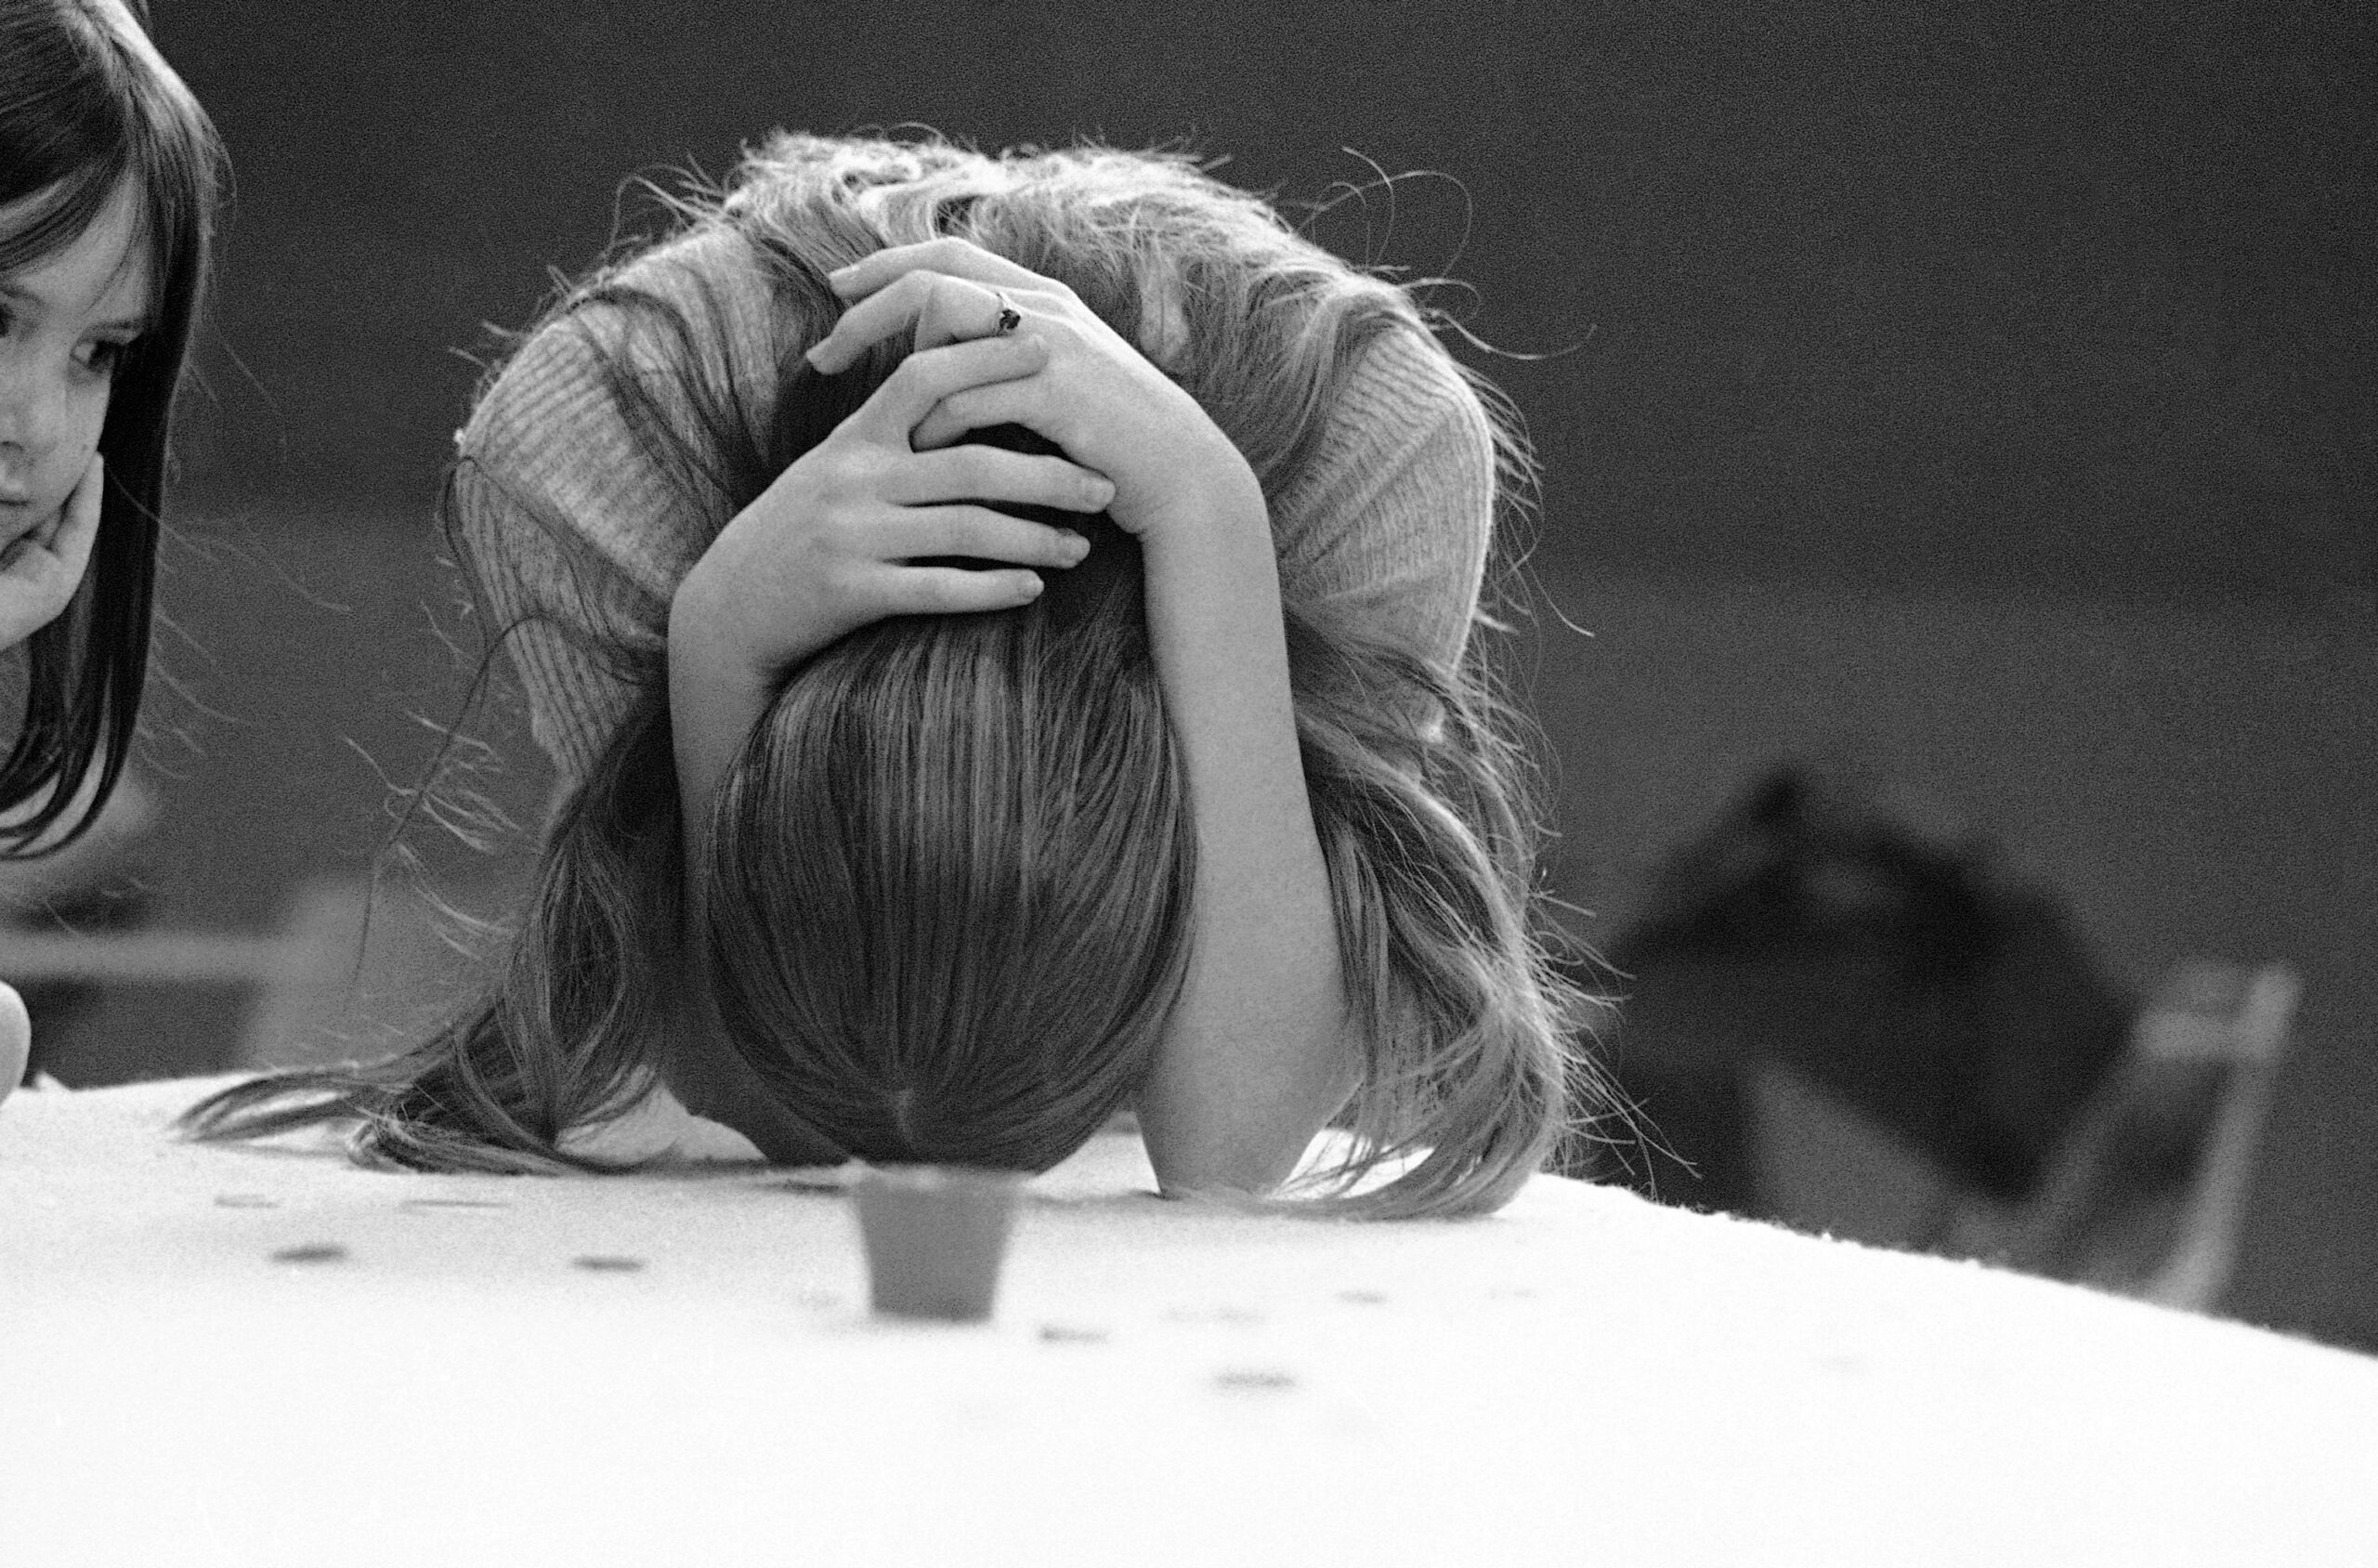 Εφηβικό burnout: Εννέα σημάδια που δείχνουν ότι ο έφηβος έχει «καεί»